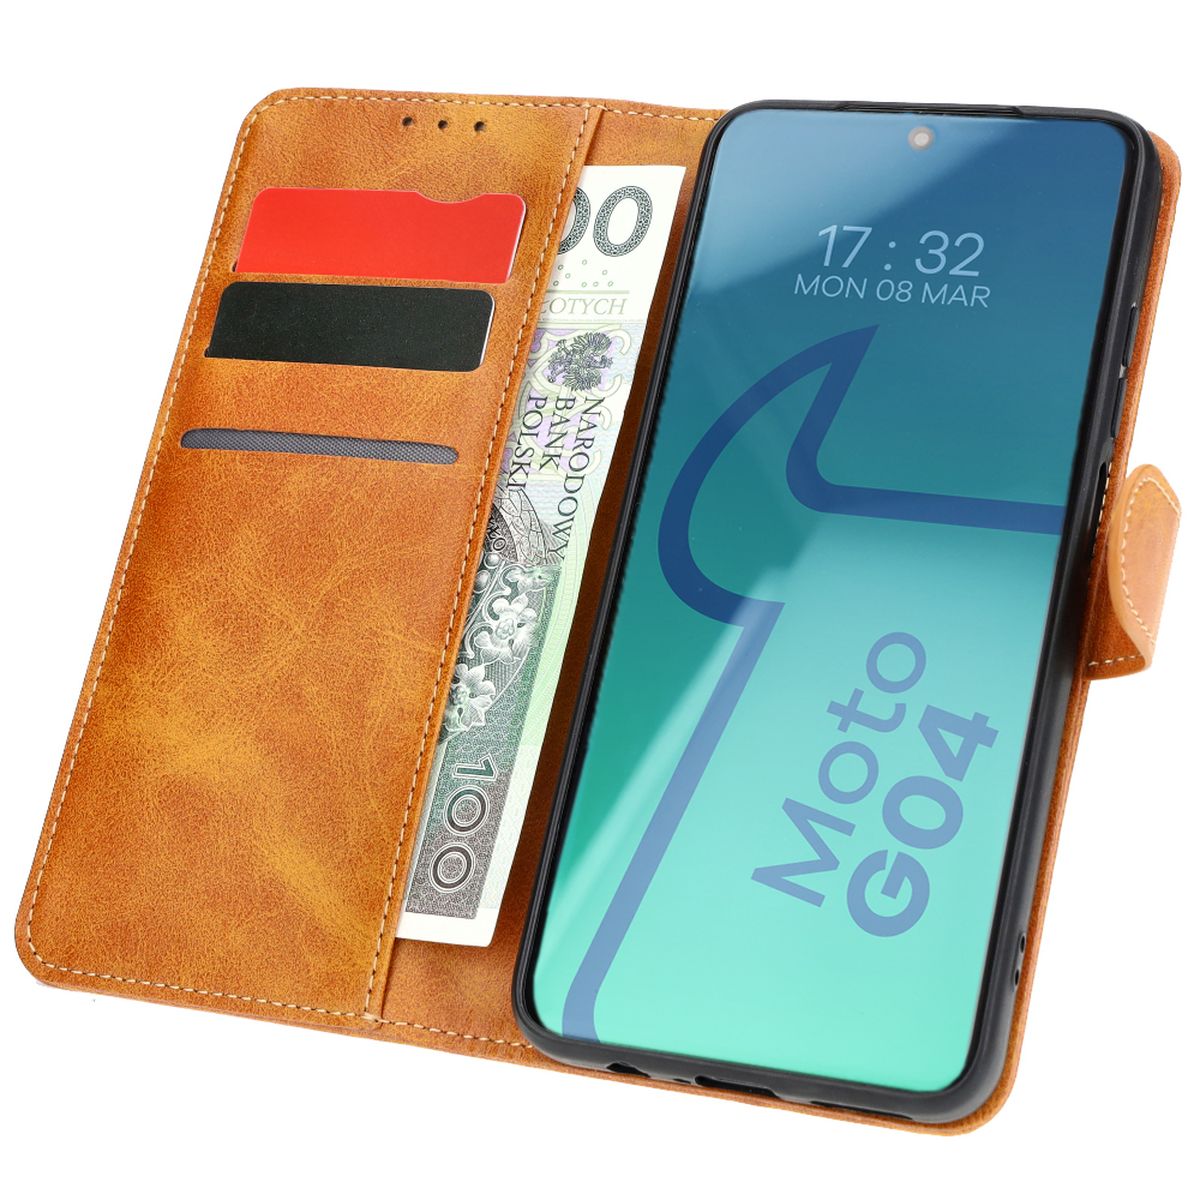 Schutzhülle für Motorola Moto G04/G24, Bizon Case Pocket, Braun